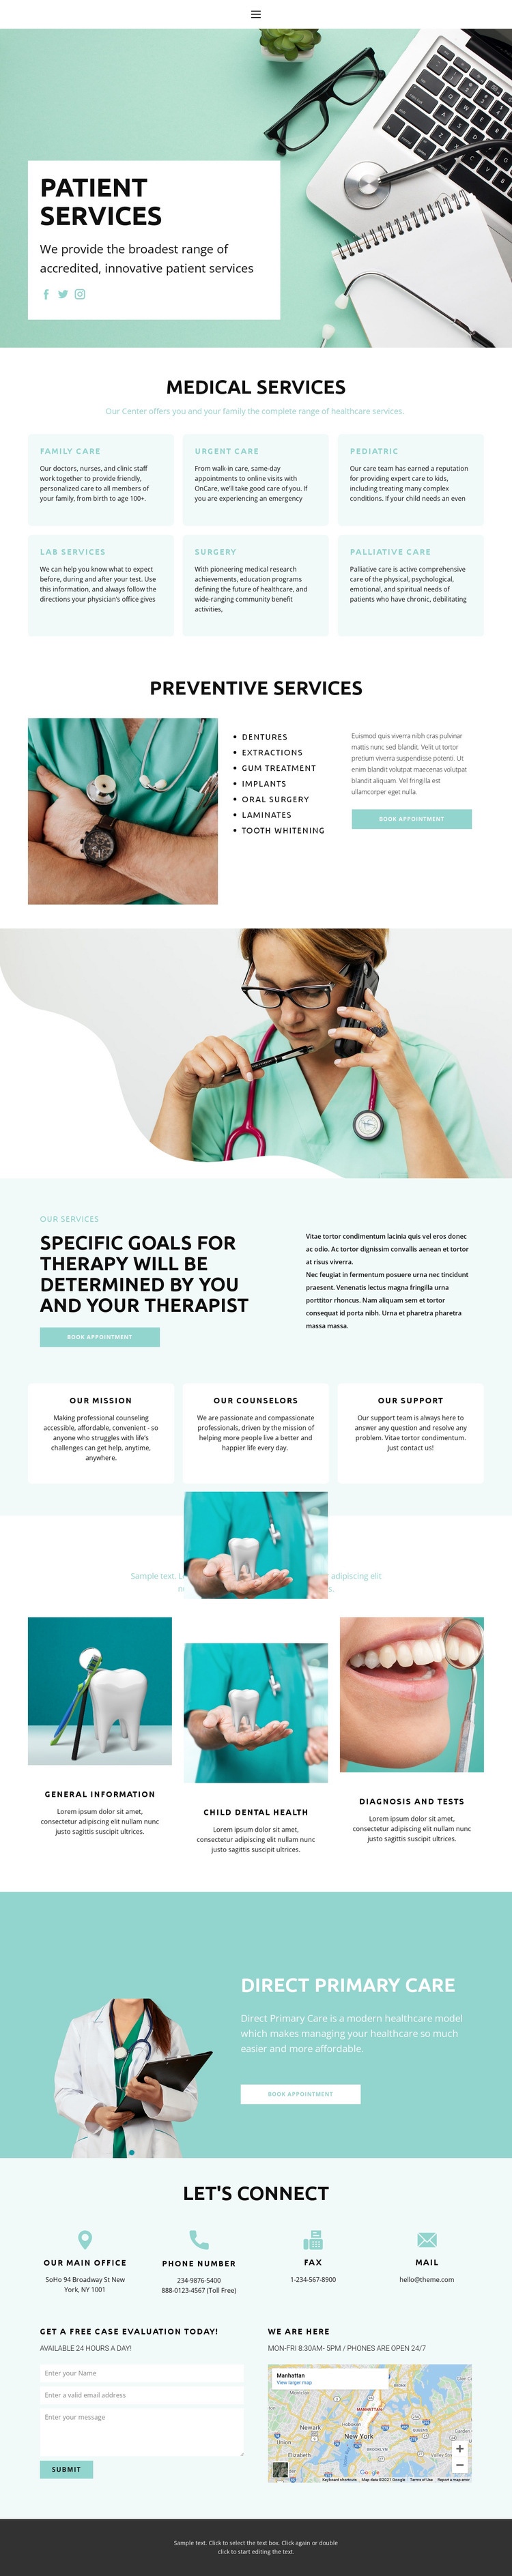 Evidence-based medicine Homepage Design